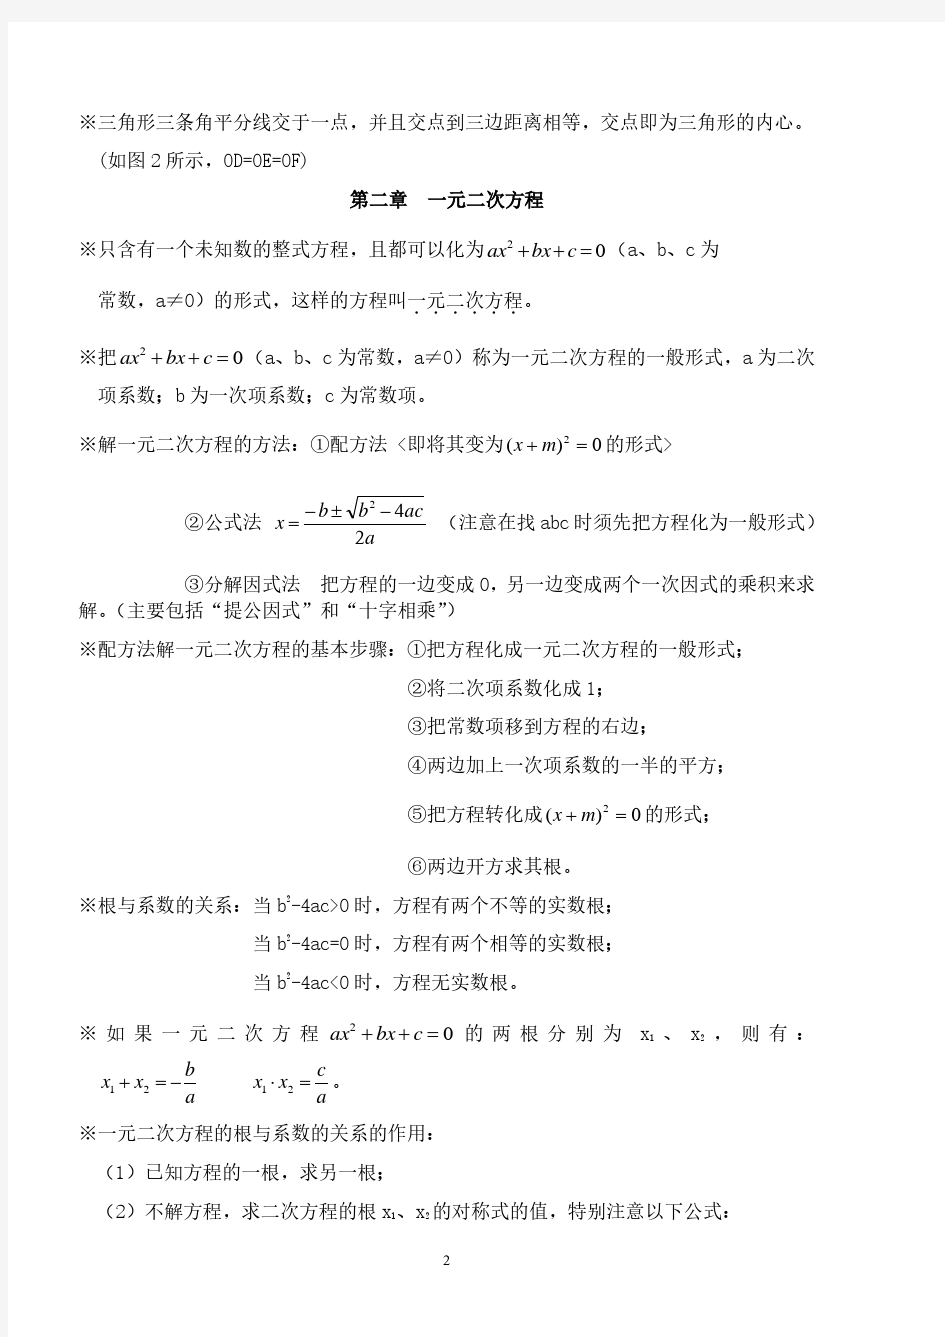 初三数学知识点归纳整理.pdf